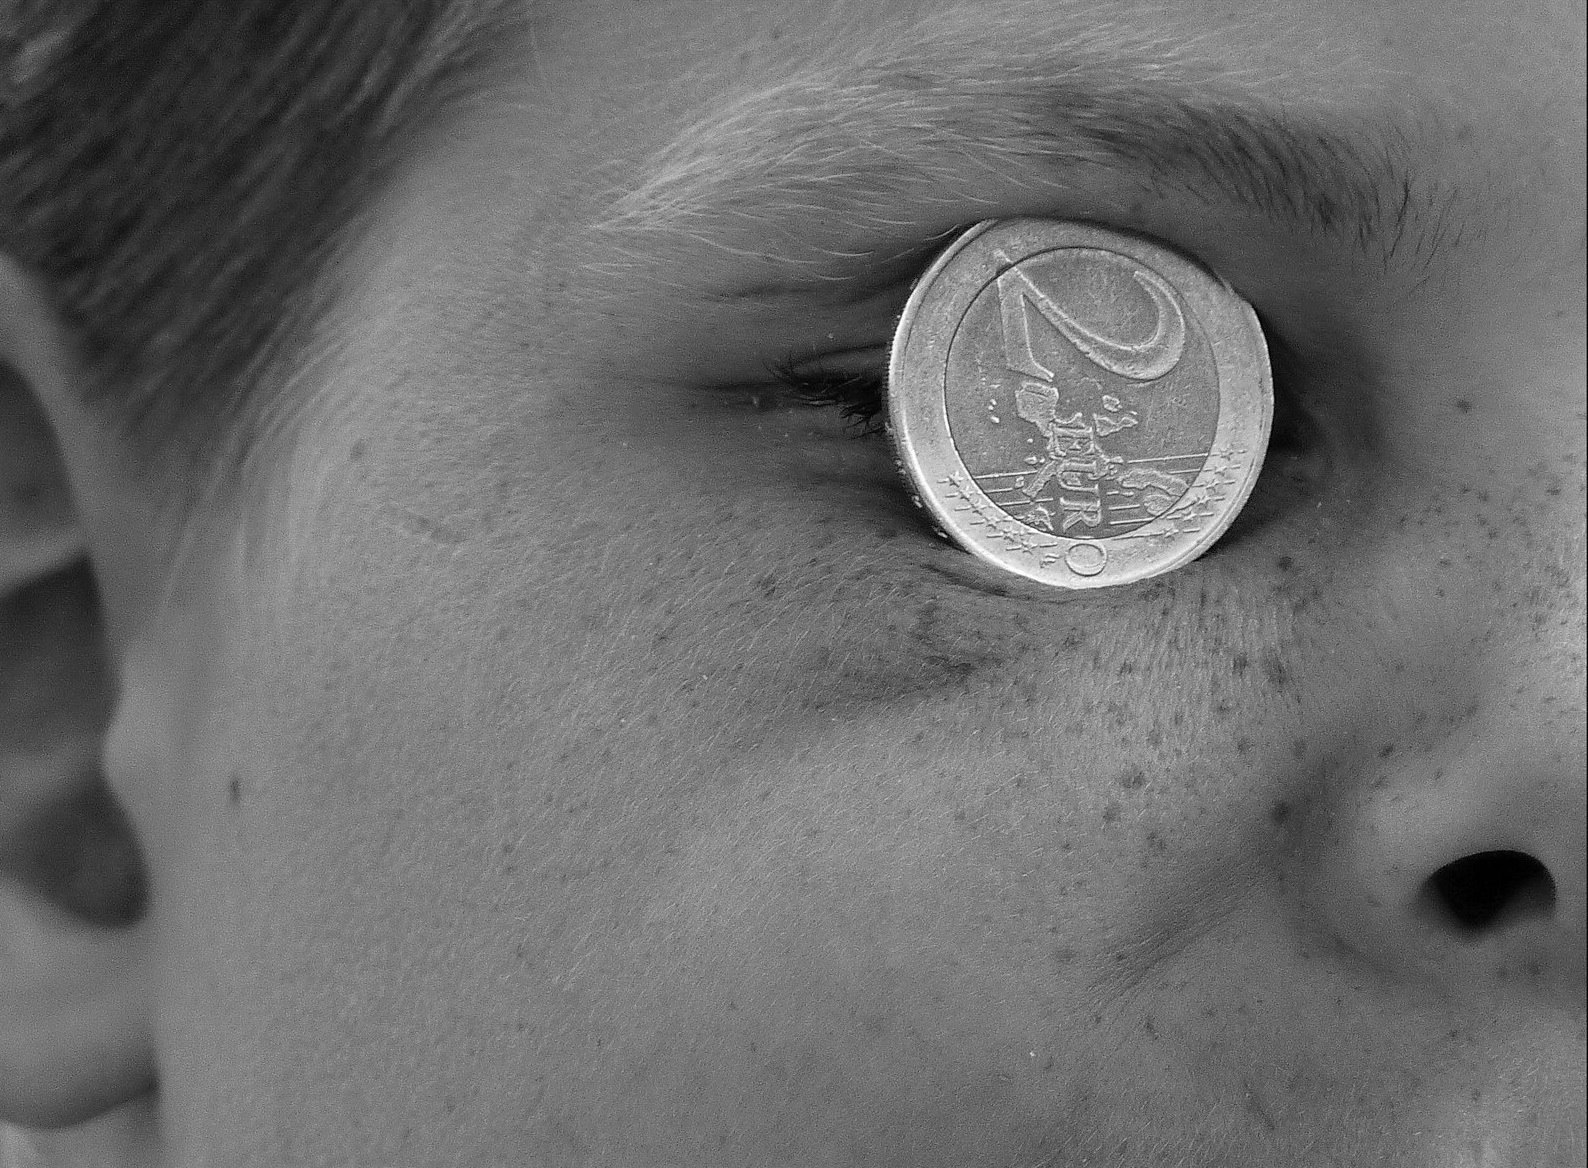 Foto: Man sieht den Teil eines Gesichtes. Im rechten Auge steckt eine 2-Euro-Münze.